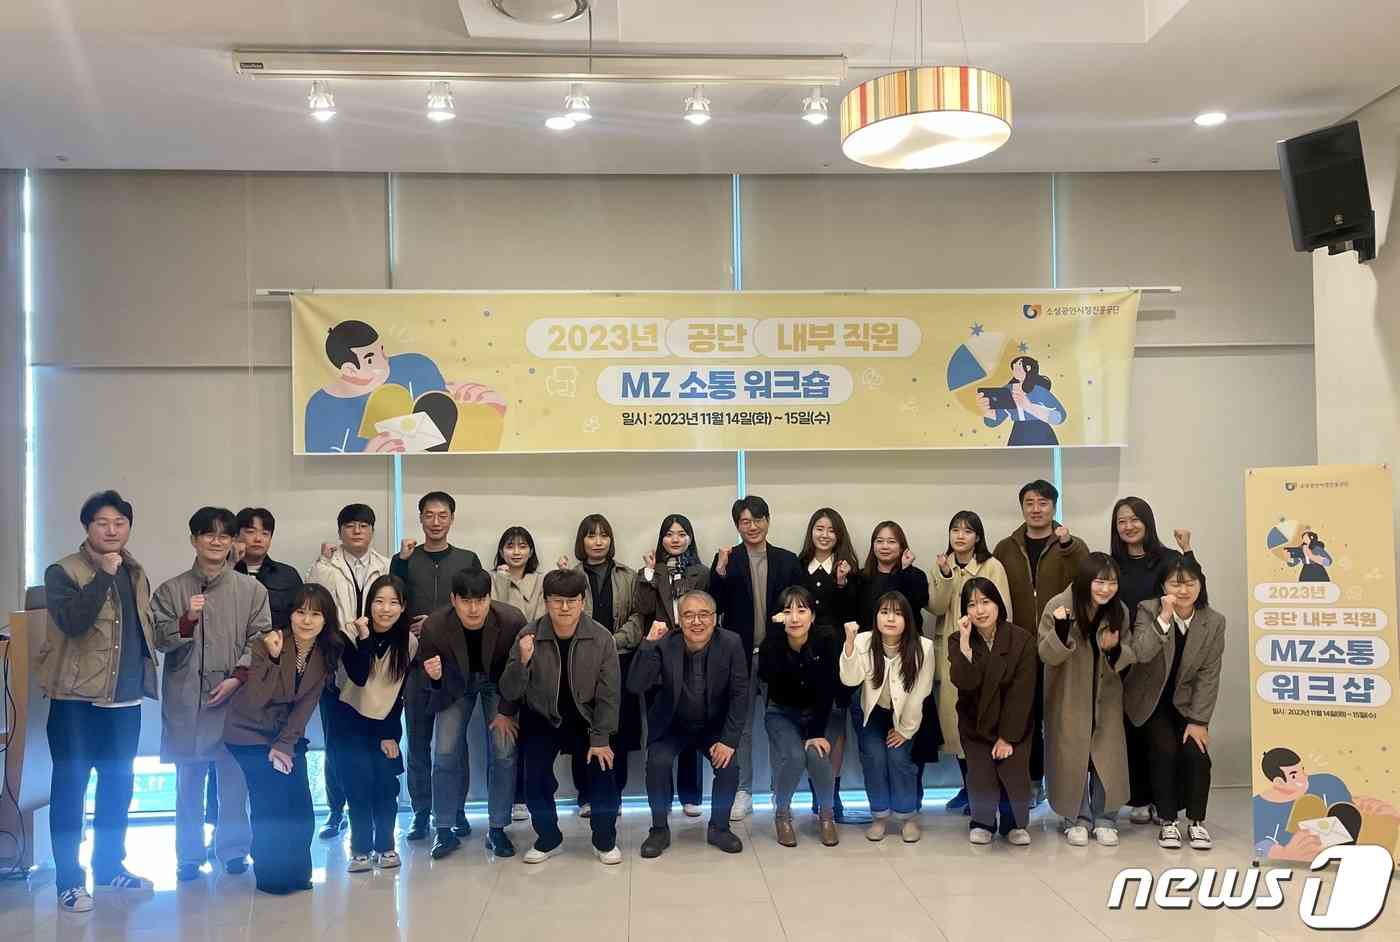 소상공인시장진흥공단은 14일부터 15일까지 대전에서 MZ세대 소통워크숍을 개최했다.(소상공인시장진흥공단 제공)